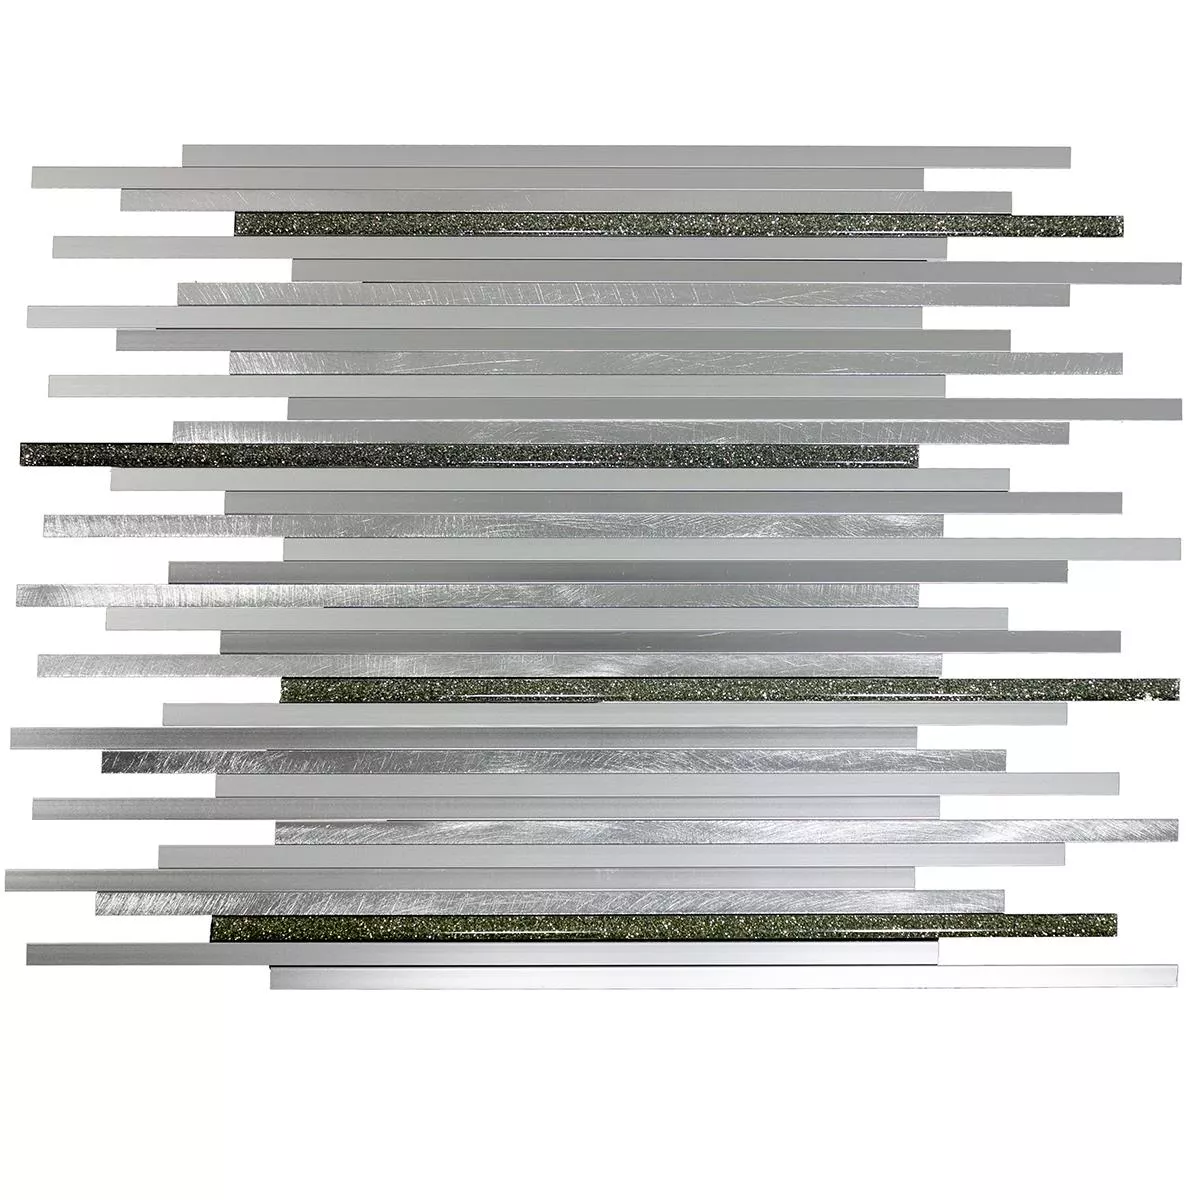 Aluminium Metall Mosaik Bilbao Stripes Silver